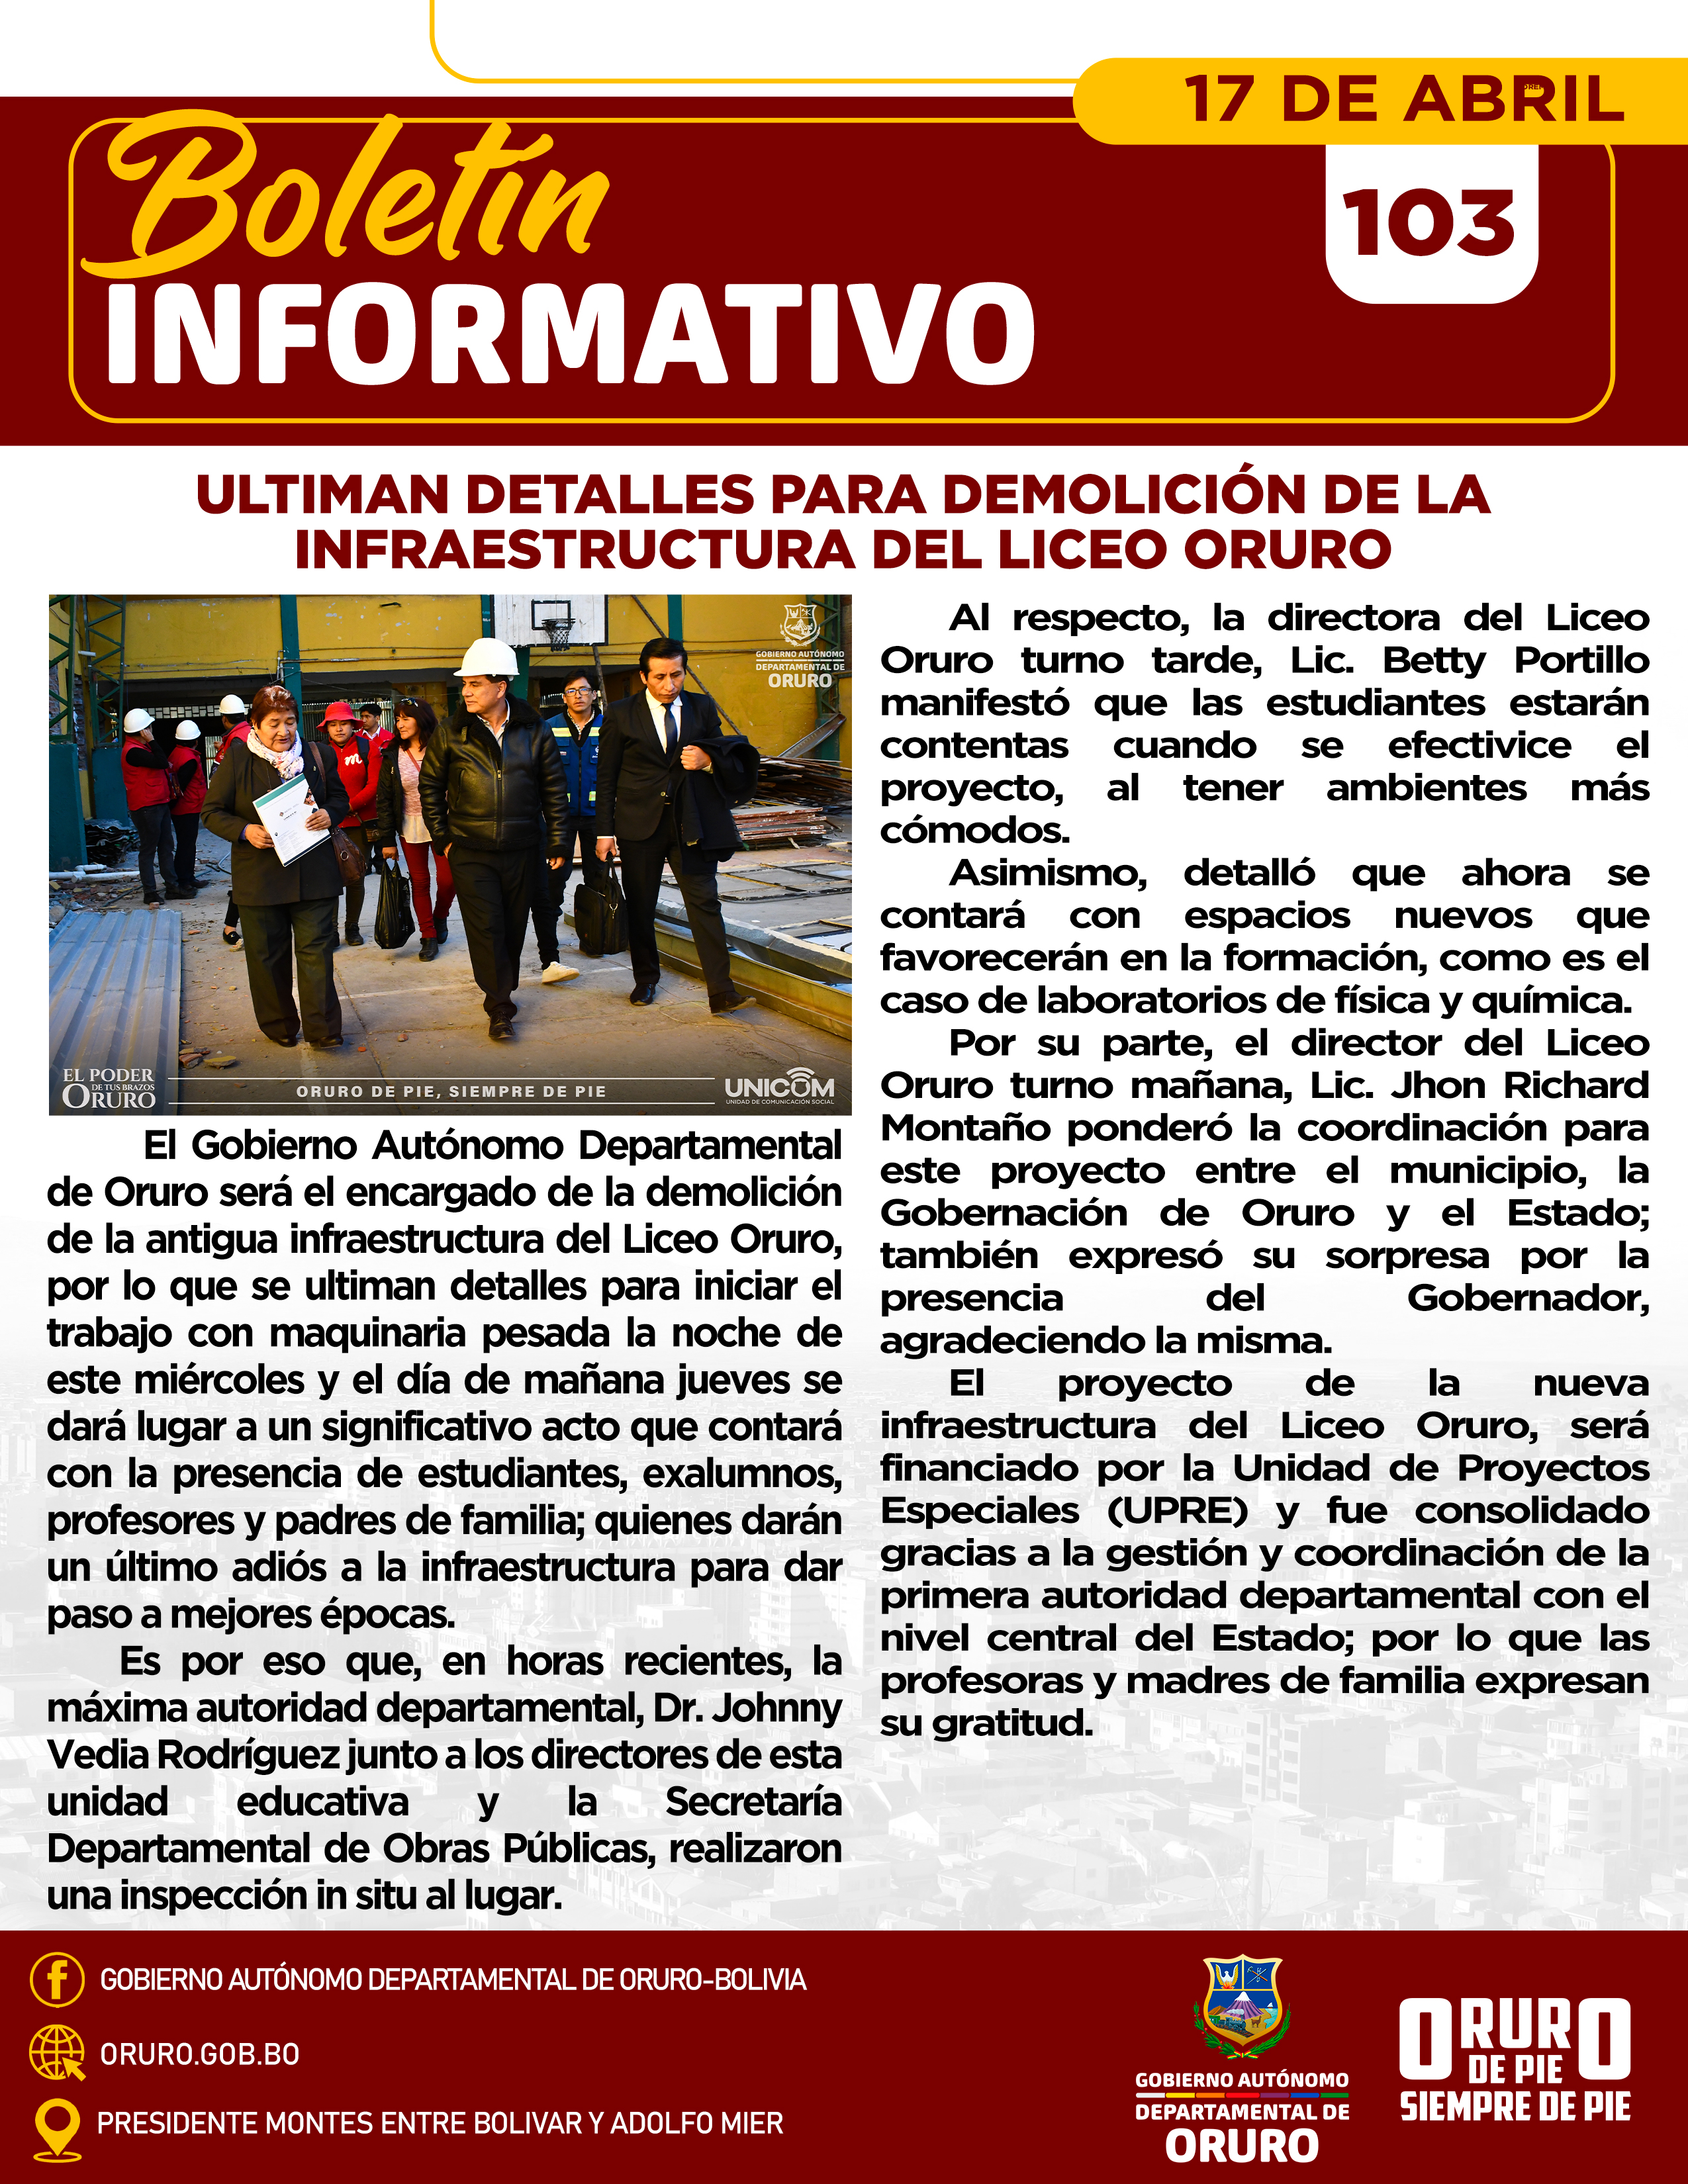 Ultiman detalles para demolición de la infraestructura del Liceo Oruro